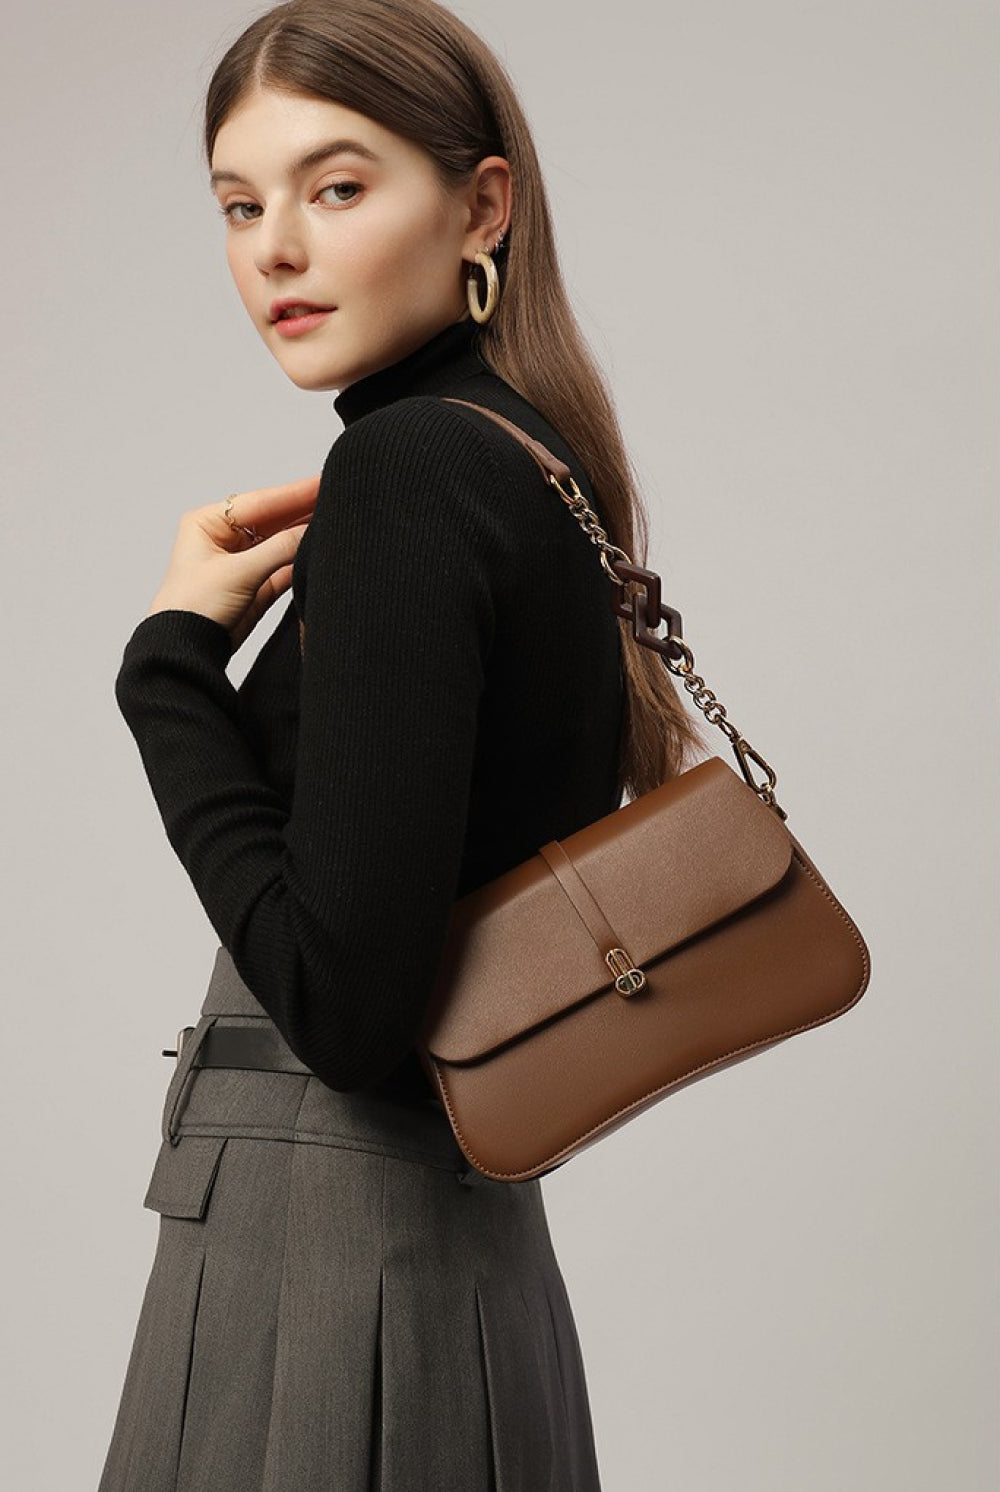 Black Adored PU Leather Shoulder Bag Handbags